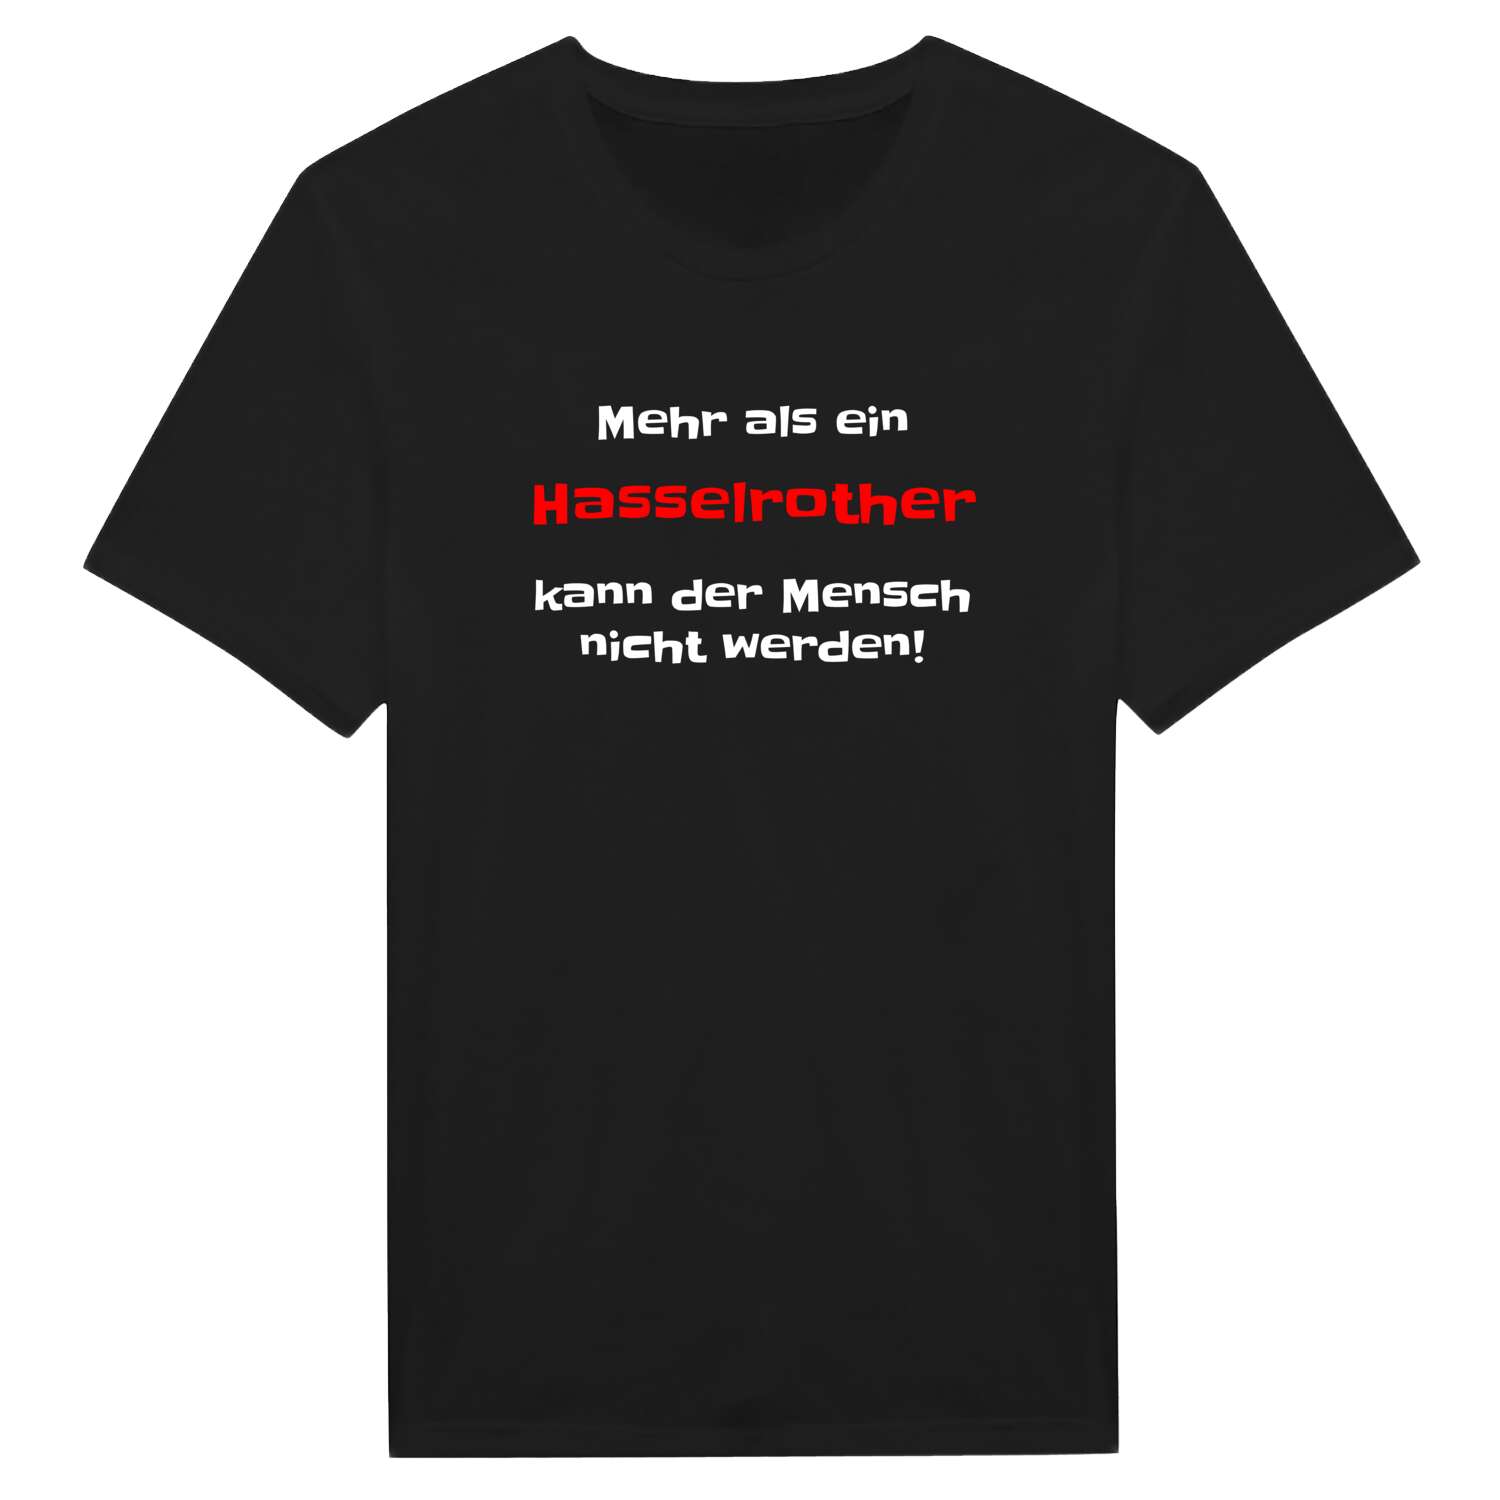 Hasselroth T-Shirt »Mehr als ein«